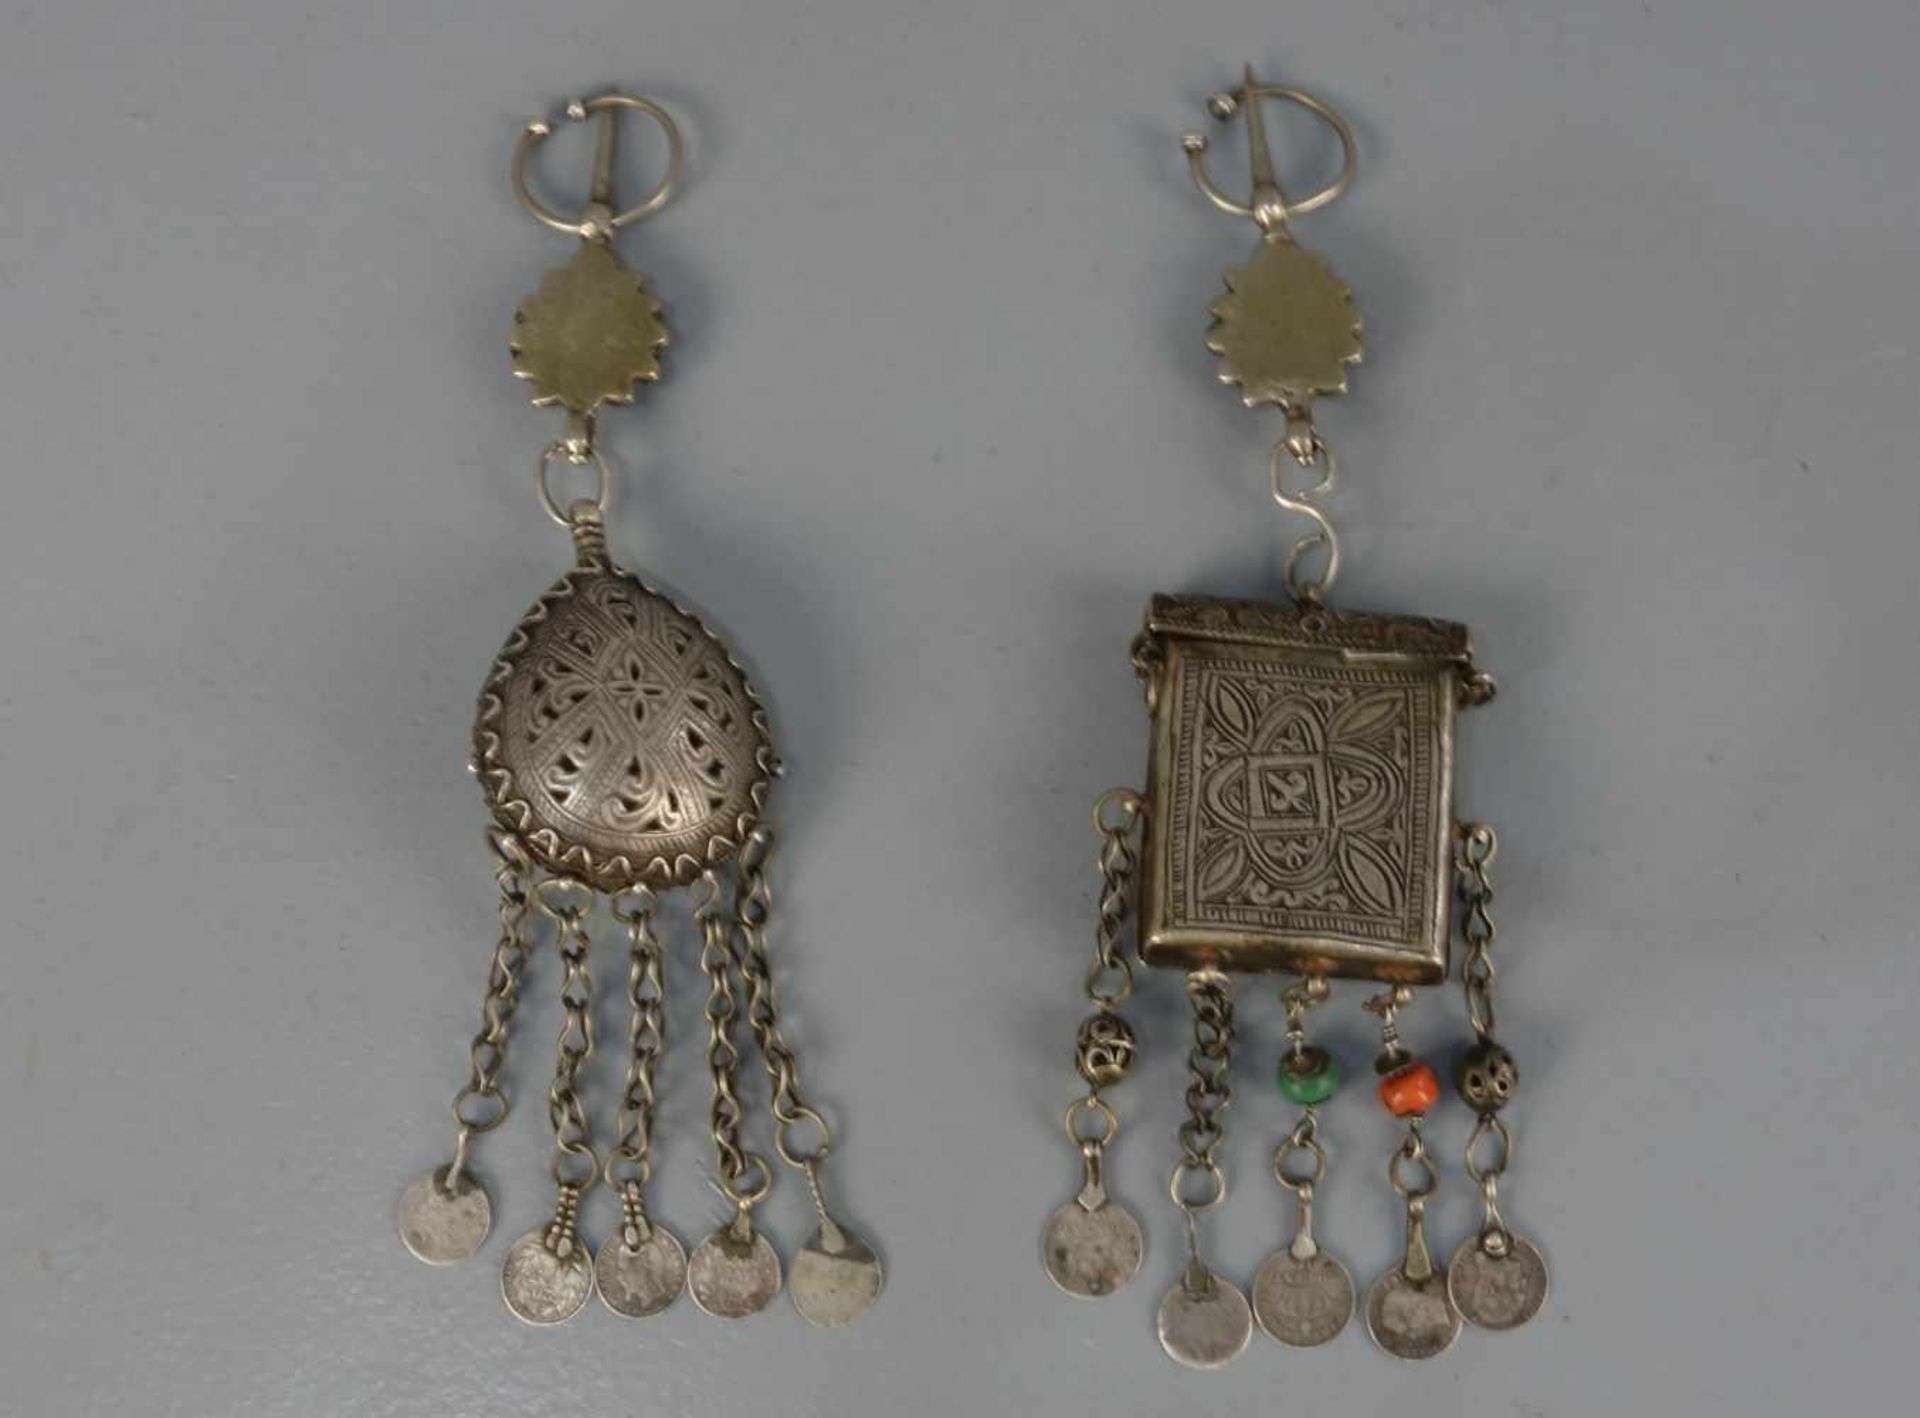 BERBER-SCHMUCK: MÜNZFIBELN / oriental jewellery with french coins, Marokko, Silber, Glas, Stein ( - Image 2 of 2